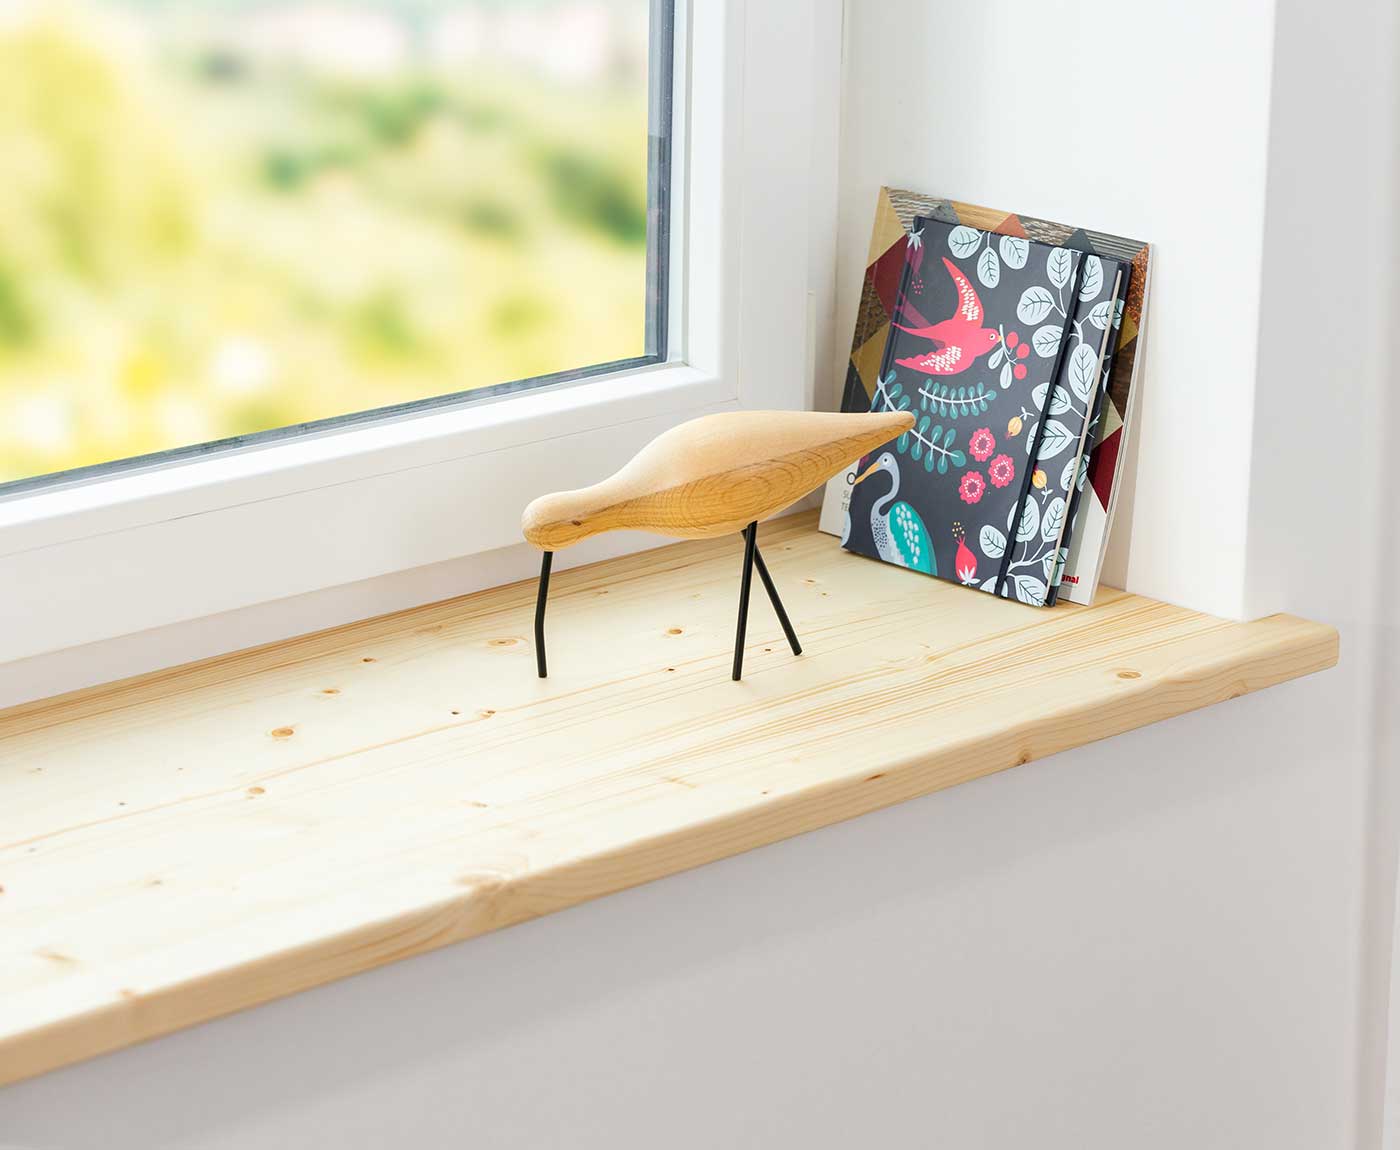 Holz-Projekt-Summer Fensterbank AHORN Massivholz Treppenstufe  Renovierungsstufe Fensterbrett Trittstufe Maßanfertigung (25 x 60cm,  Oberfläche geölt) : : Baumarkt